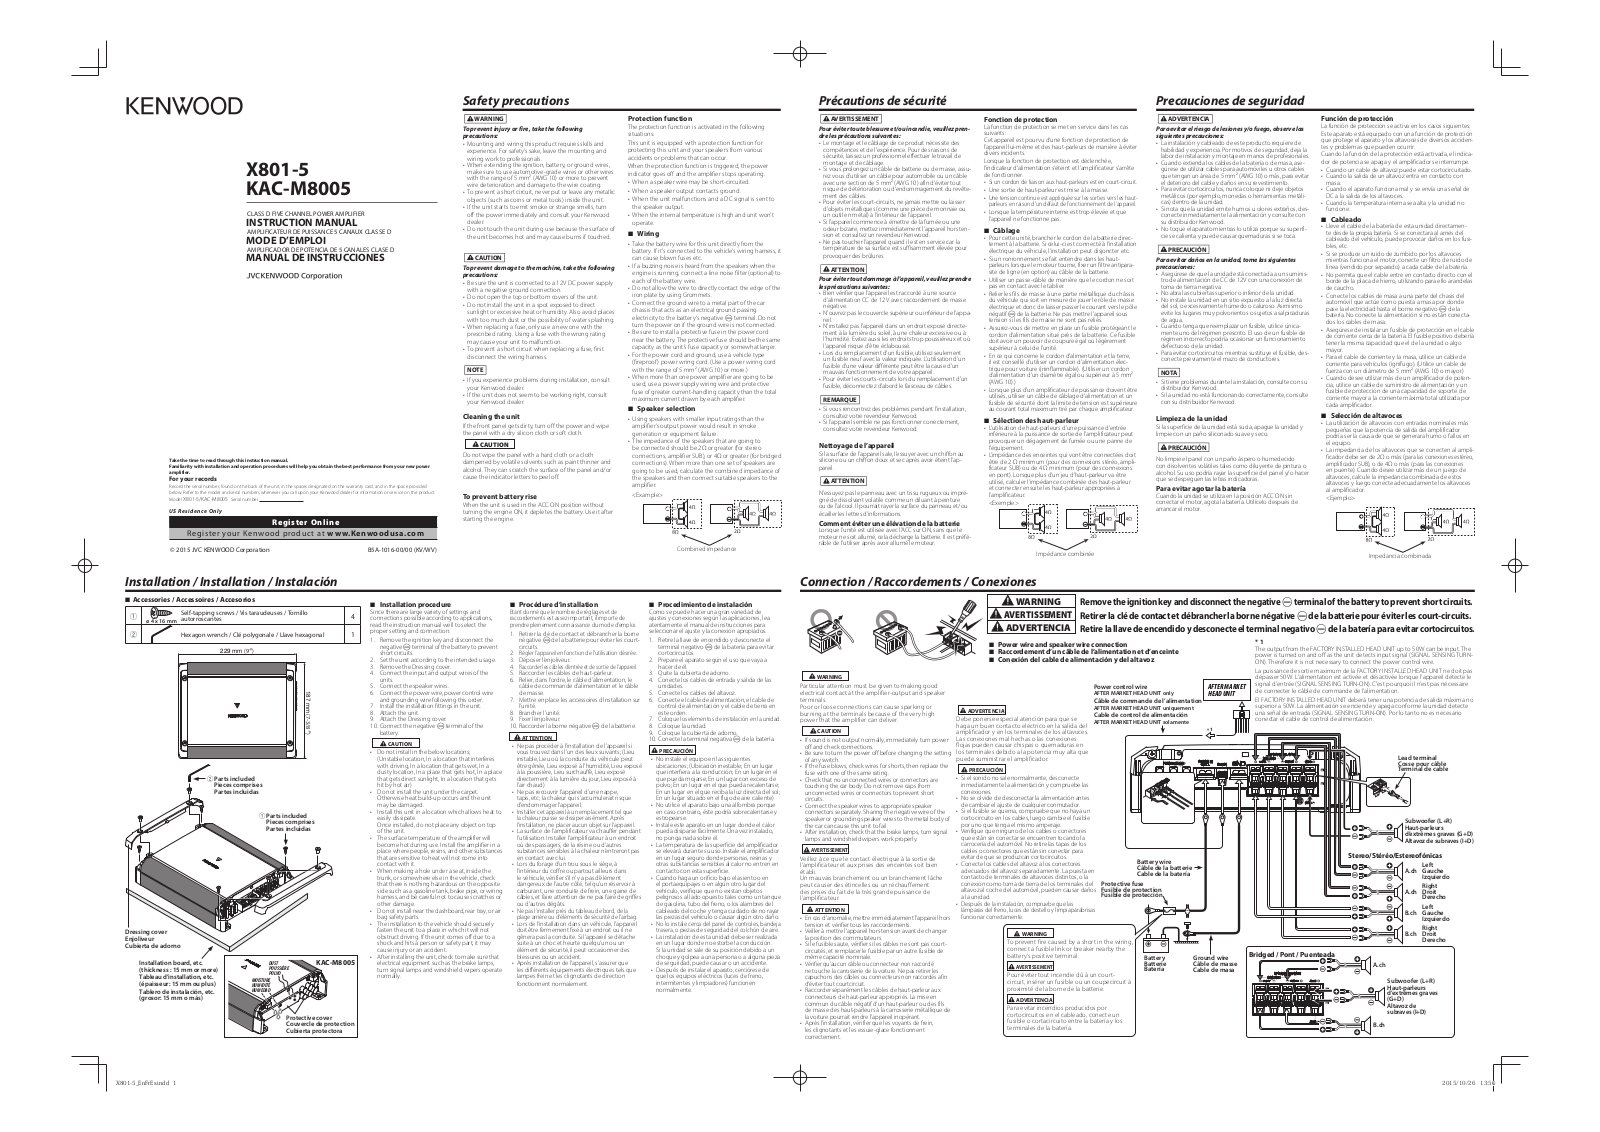 Kenwood KAC-M8005, X801-5 Manual